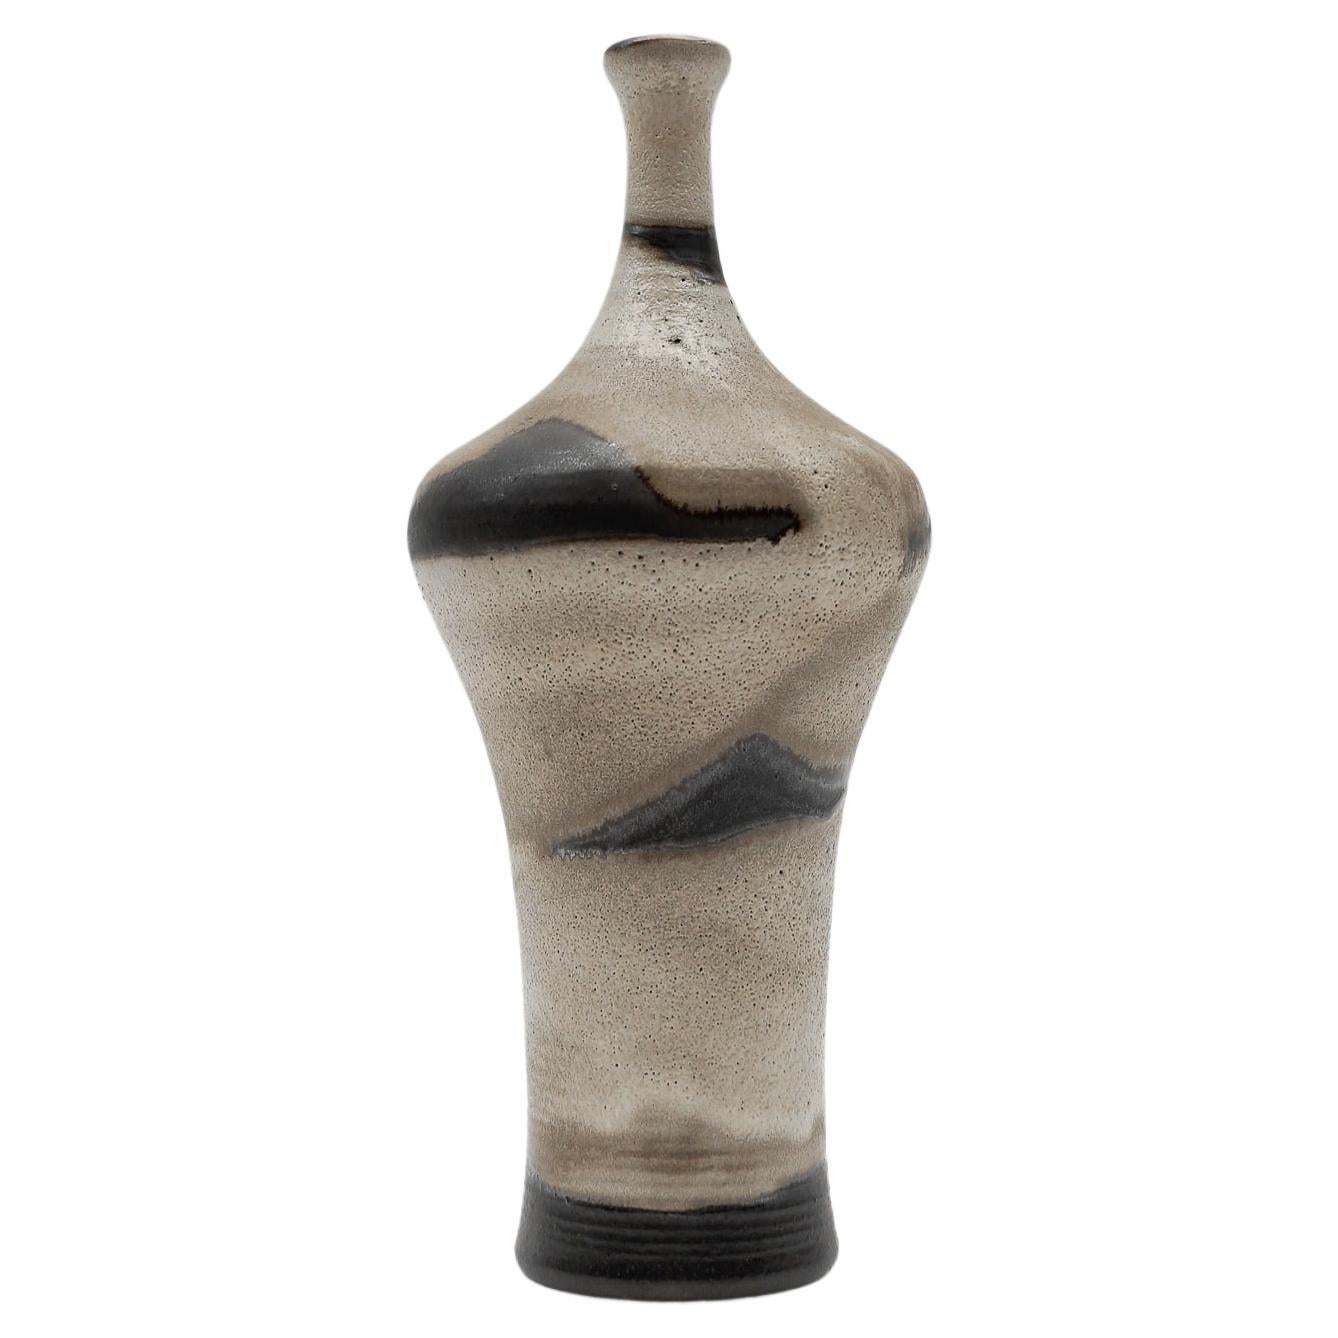 Studio Ceramic Vase by Elly Kuch for Wilhelm & Elly KUCH, 1960s, Germany